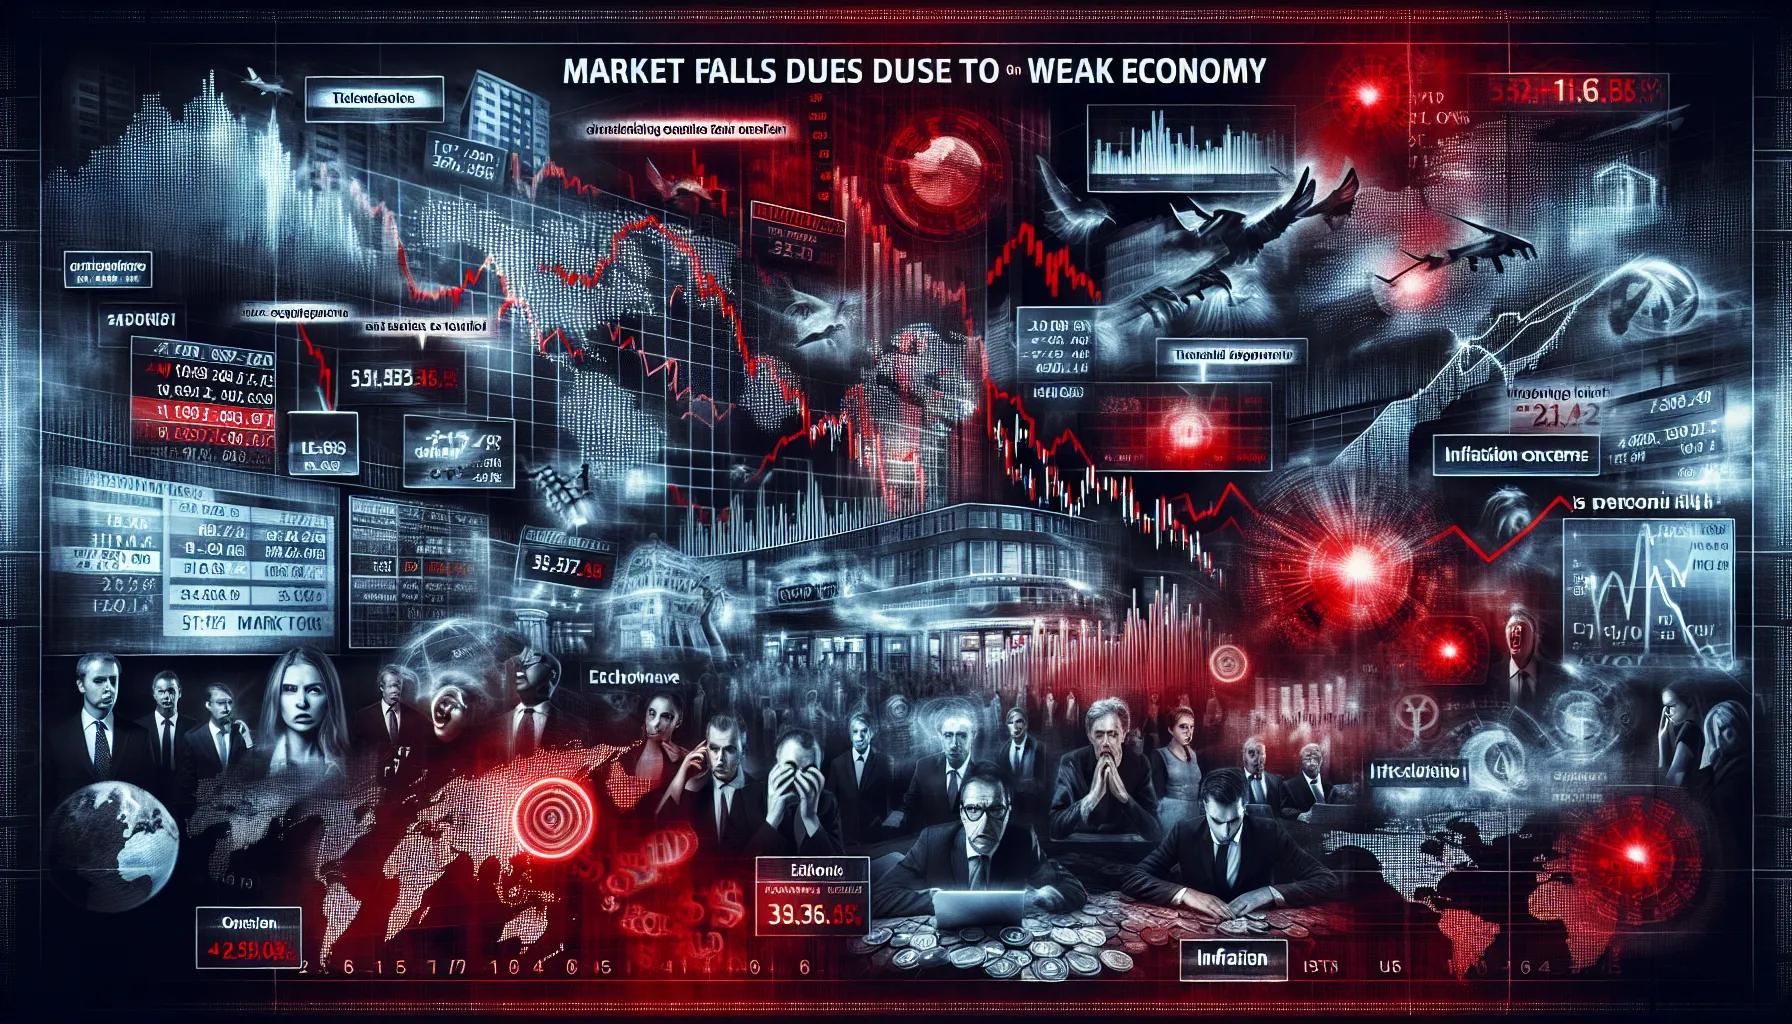 Le marché boursier fléchit face à la faiblesse des données économiques américaines